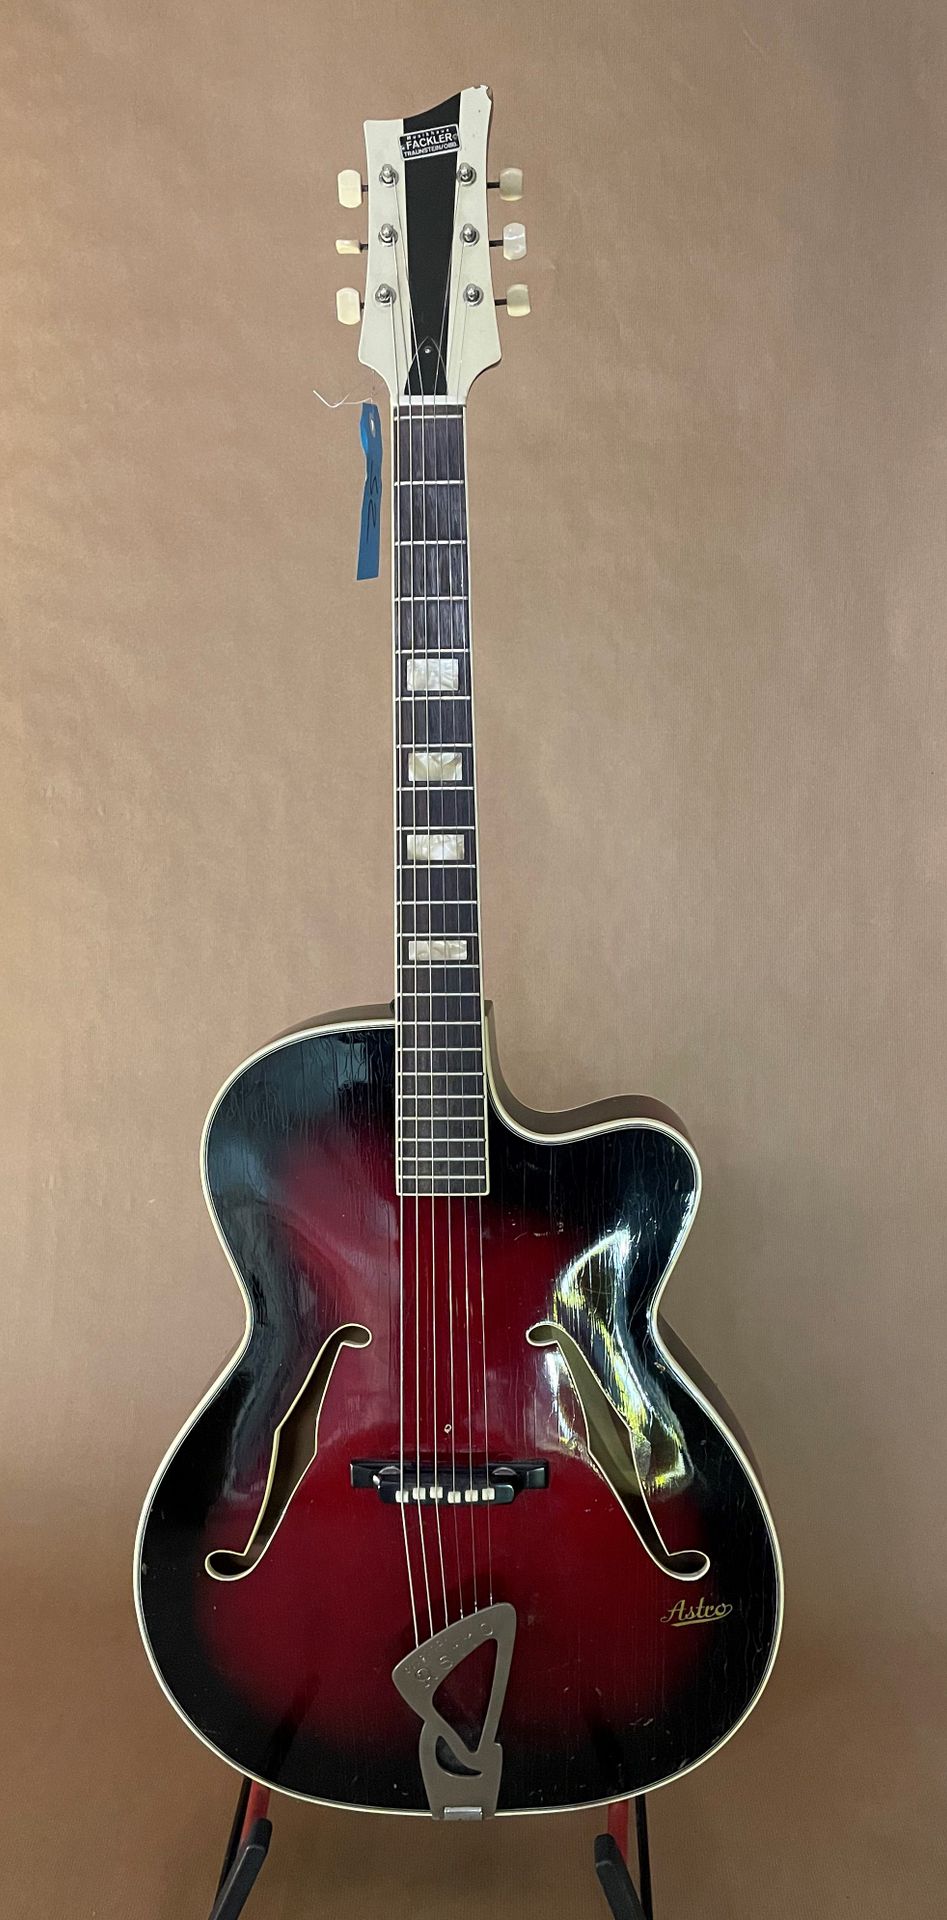 Null 爵士拱顶吉他品牌ASTRO 德国制造 约1960年

樱桃色Sunburst饰面

清漆，旧拾音器的小孔

状况良好